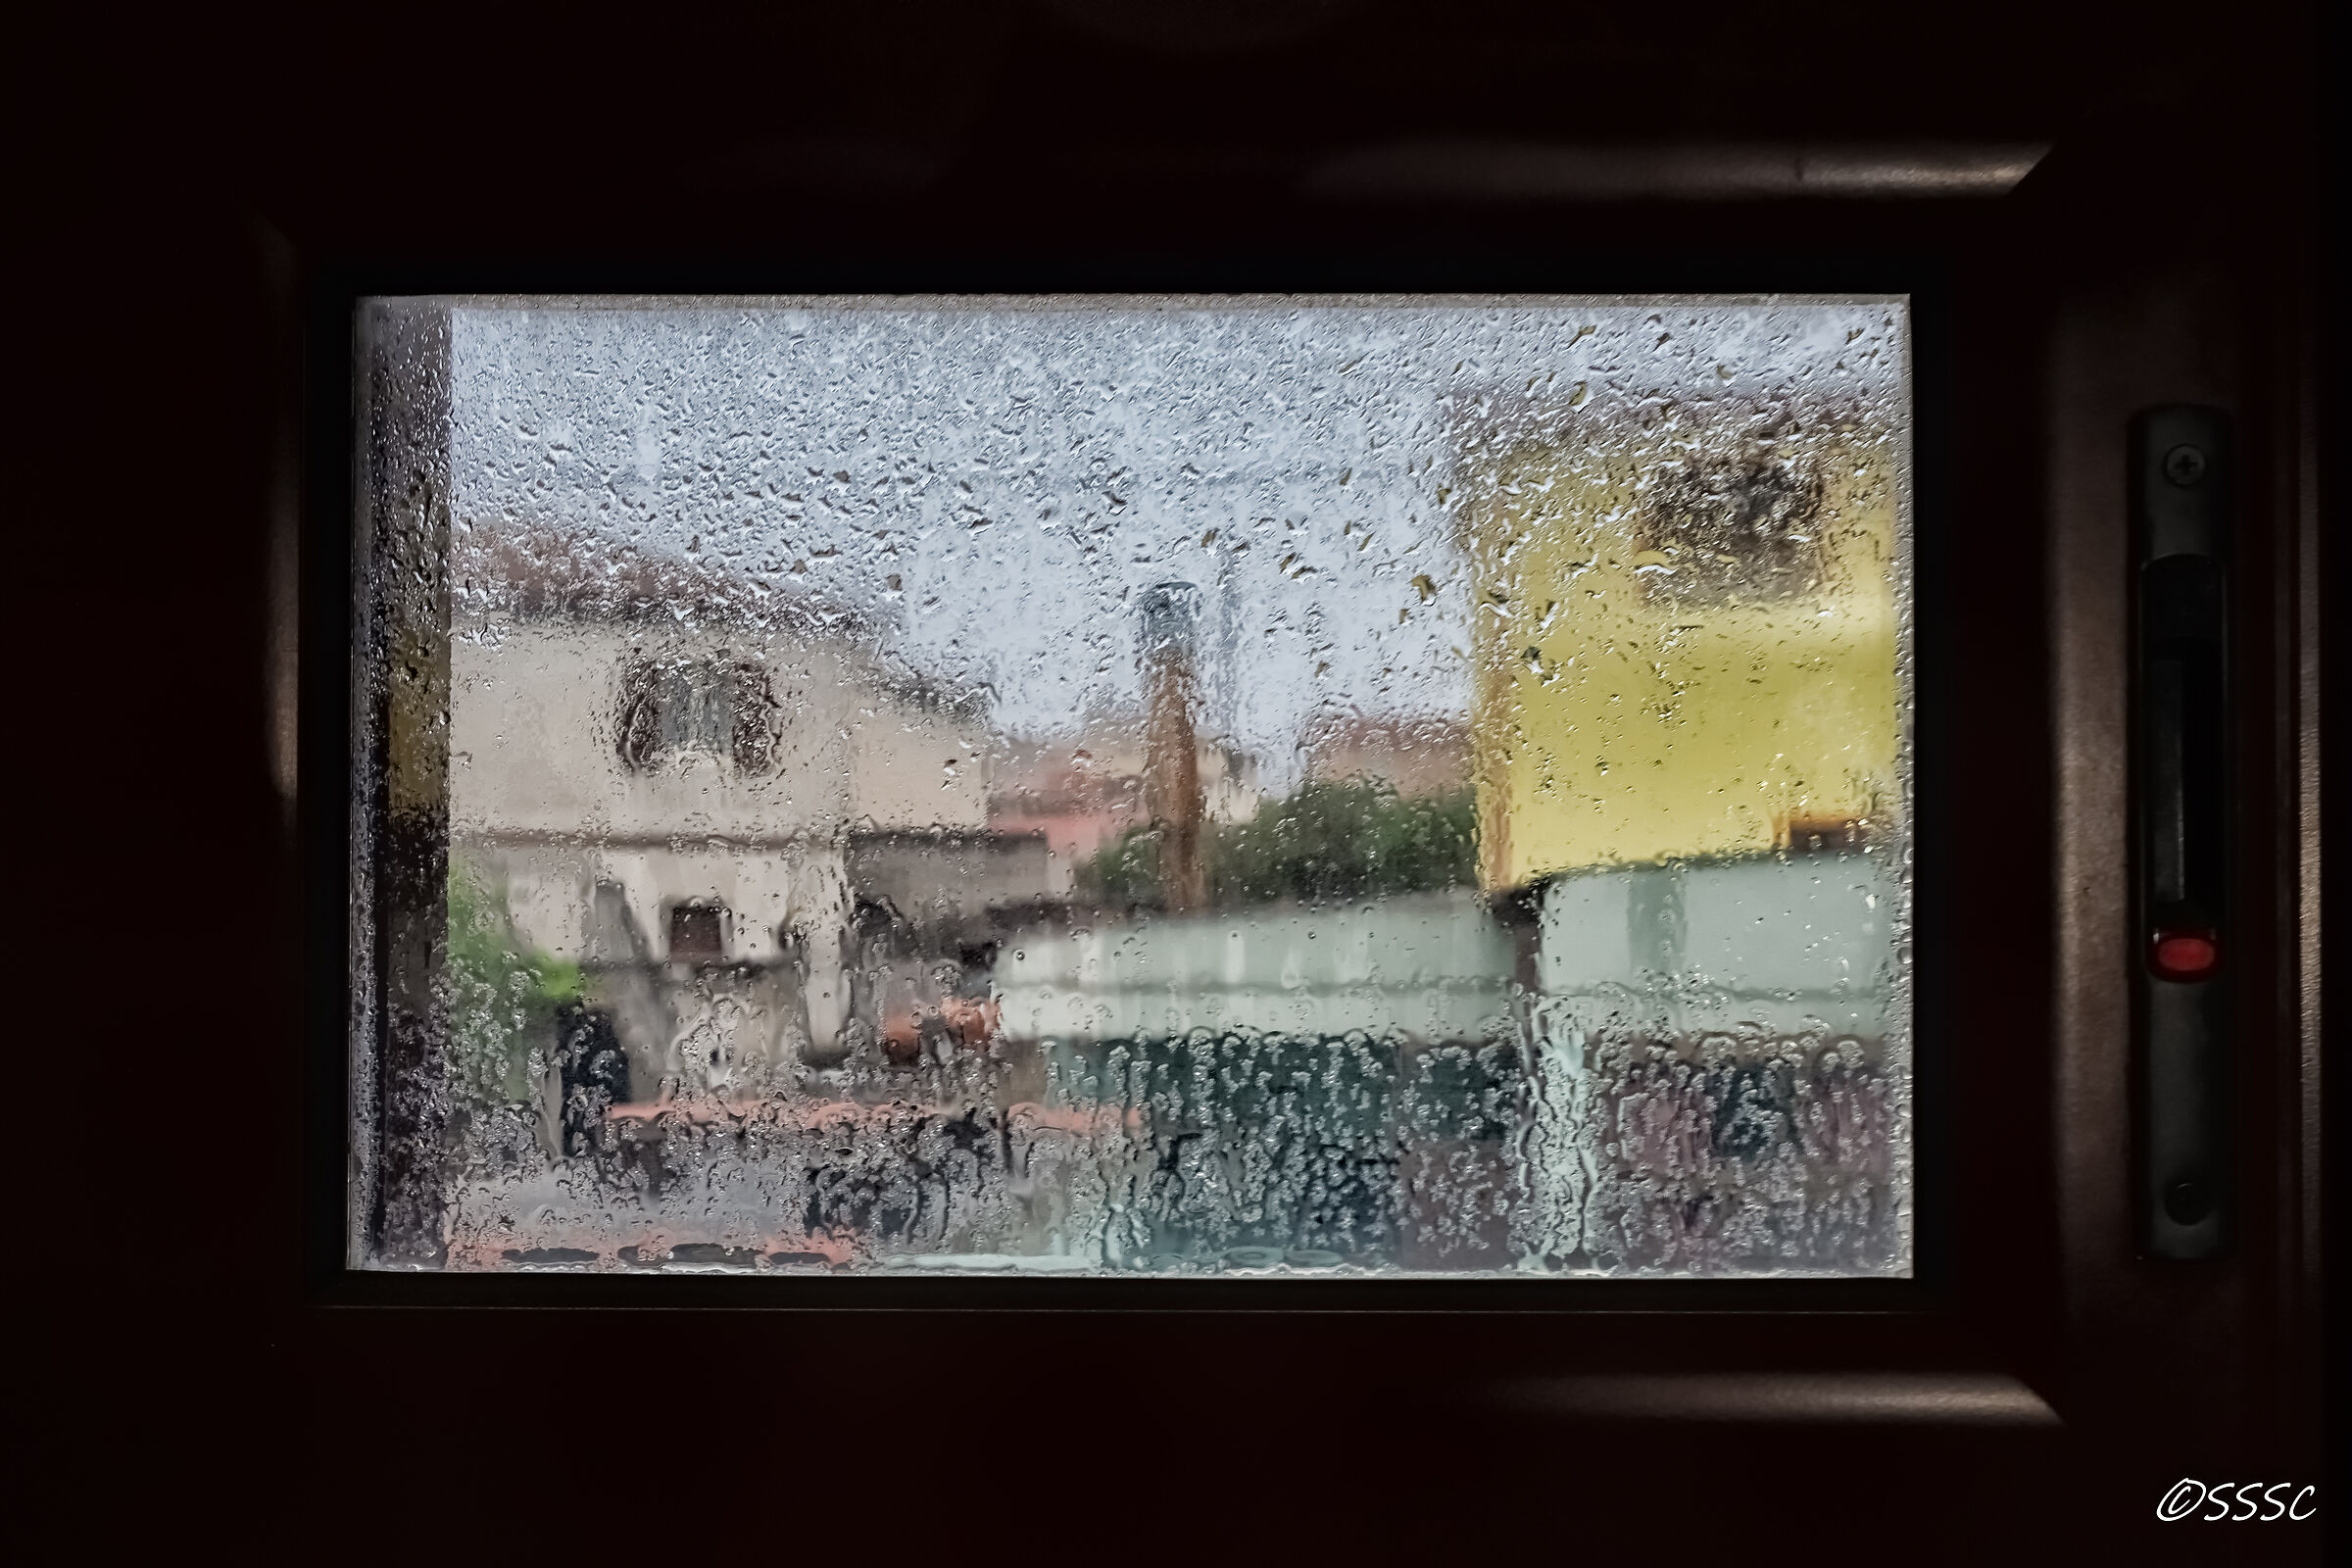 Pioggia sulla finestra...